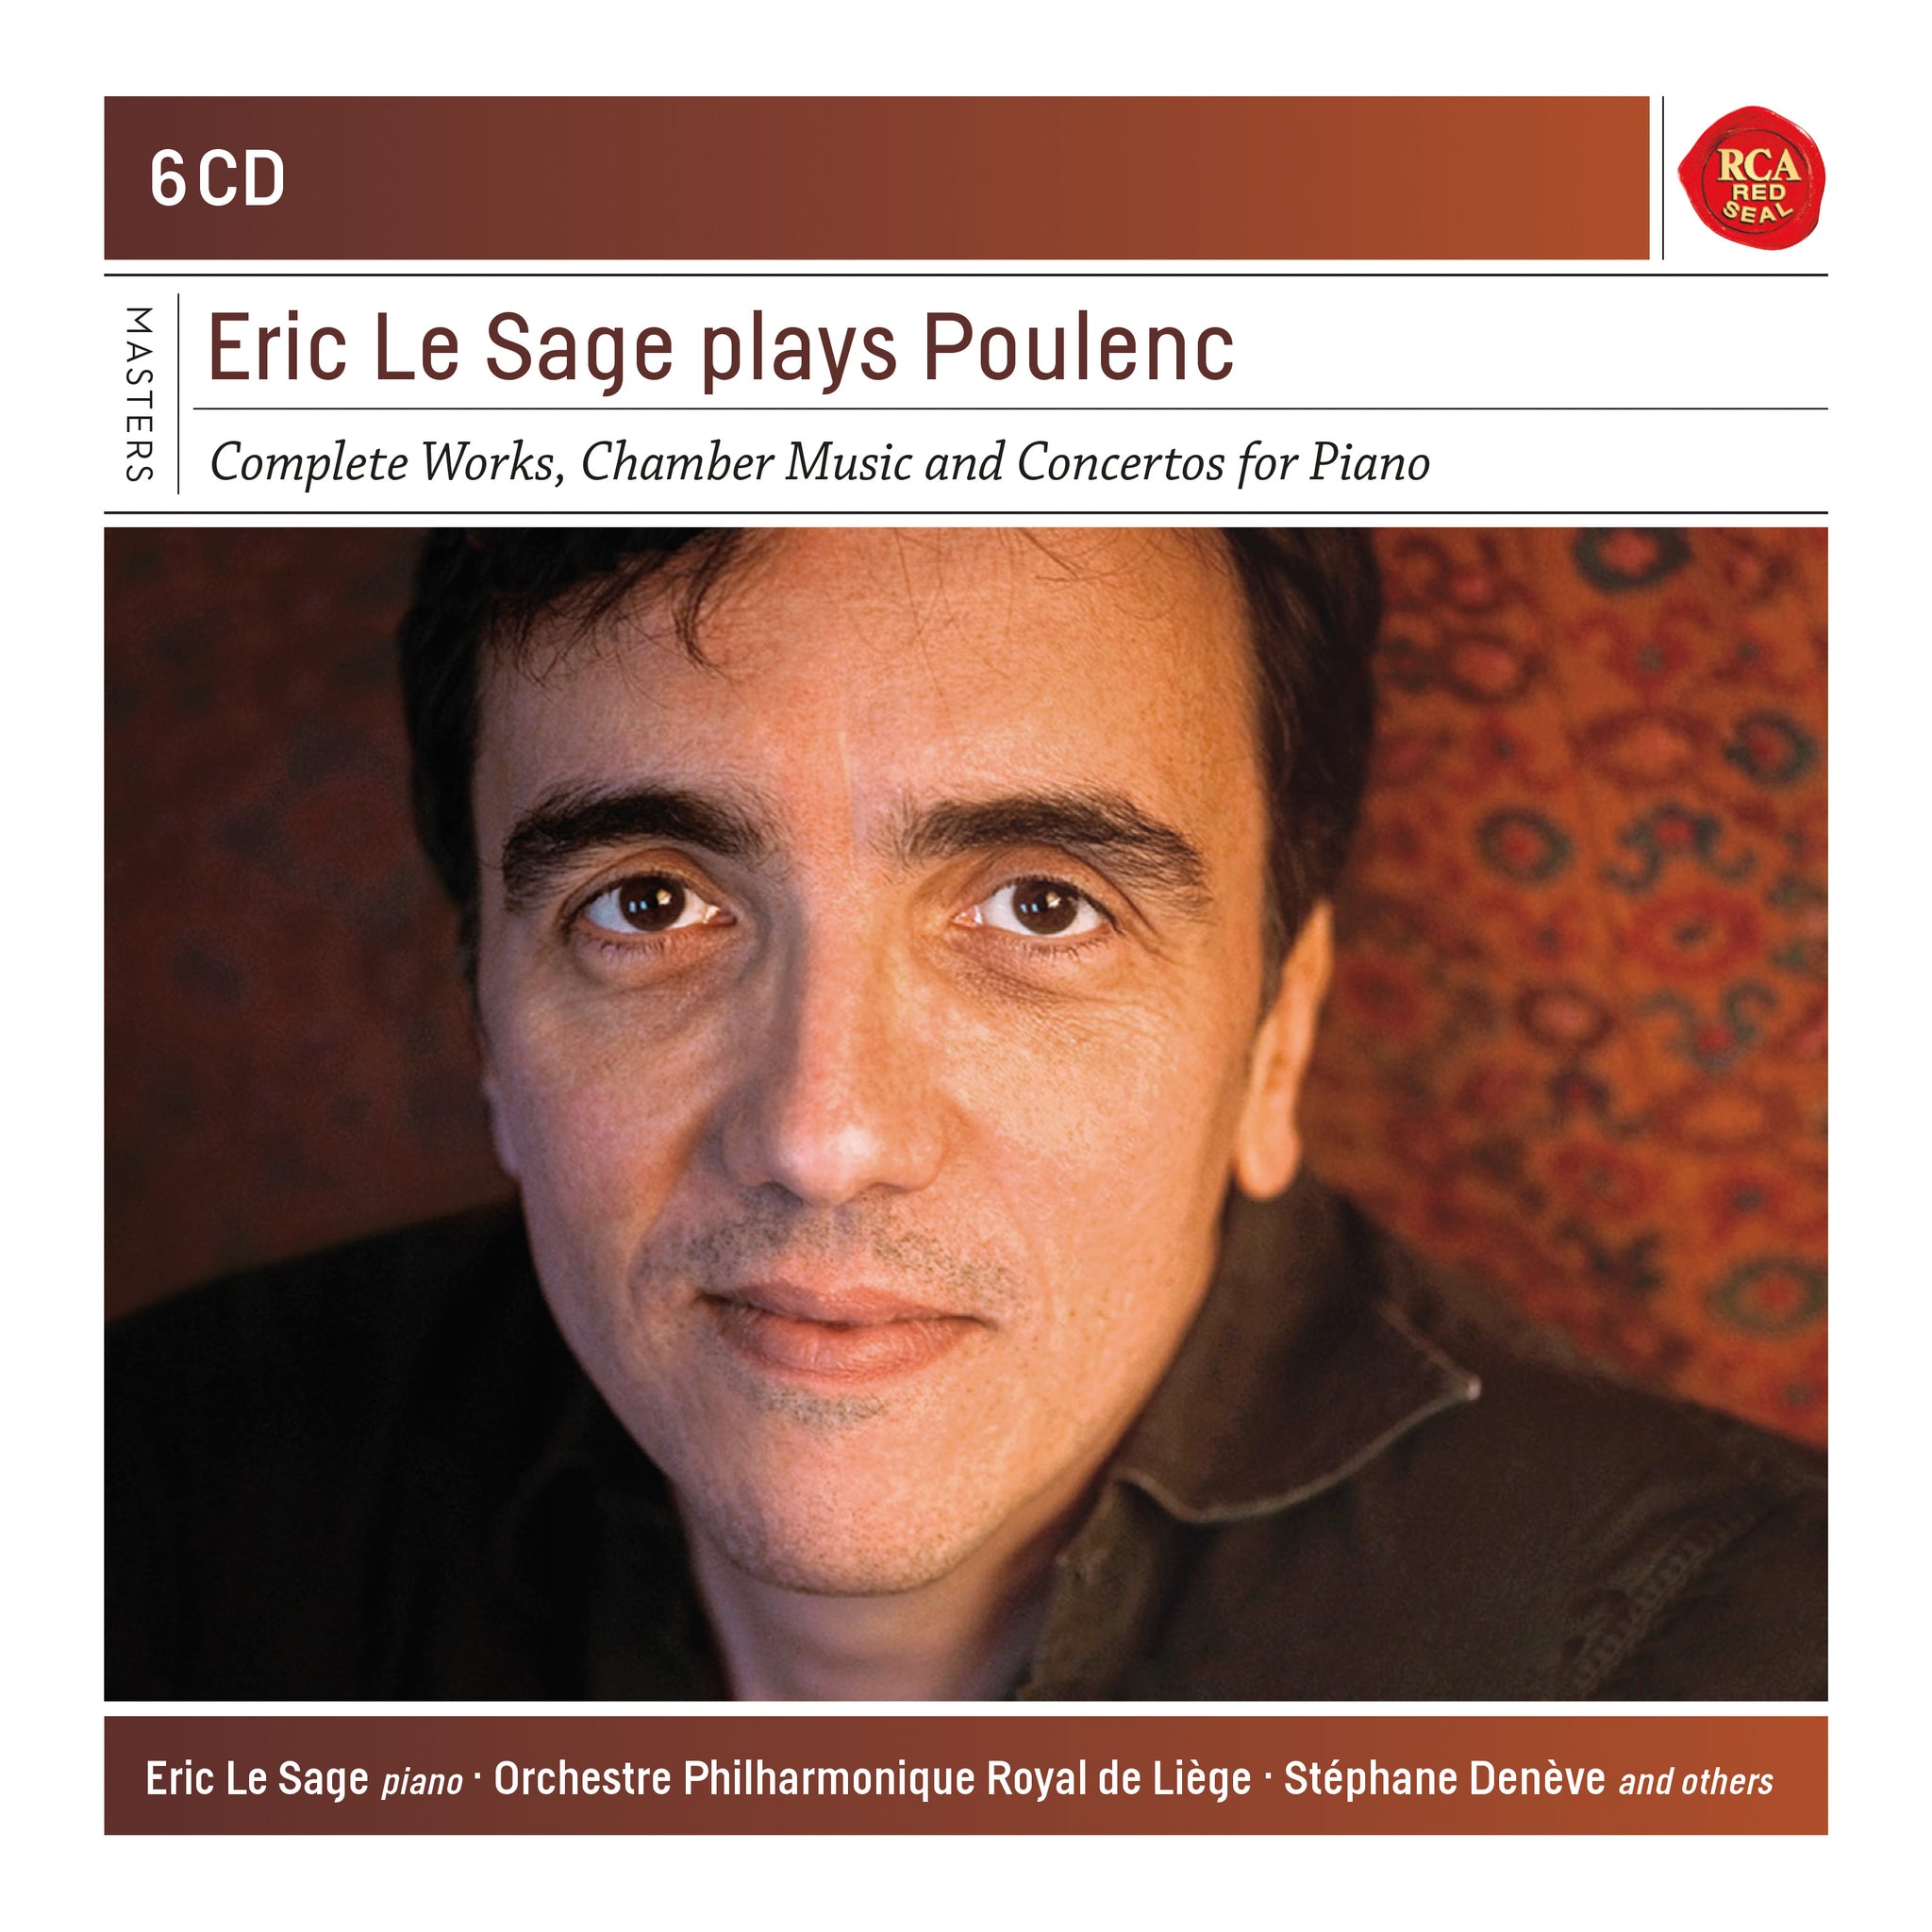 Eric Le Sage plays Poulenc